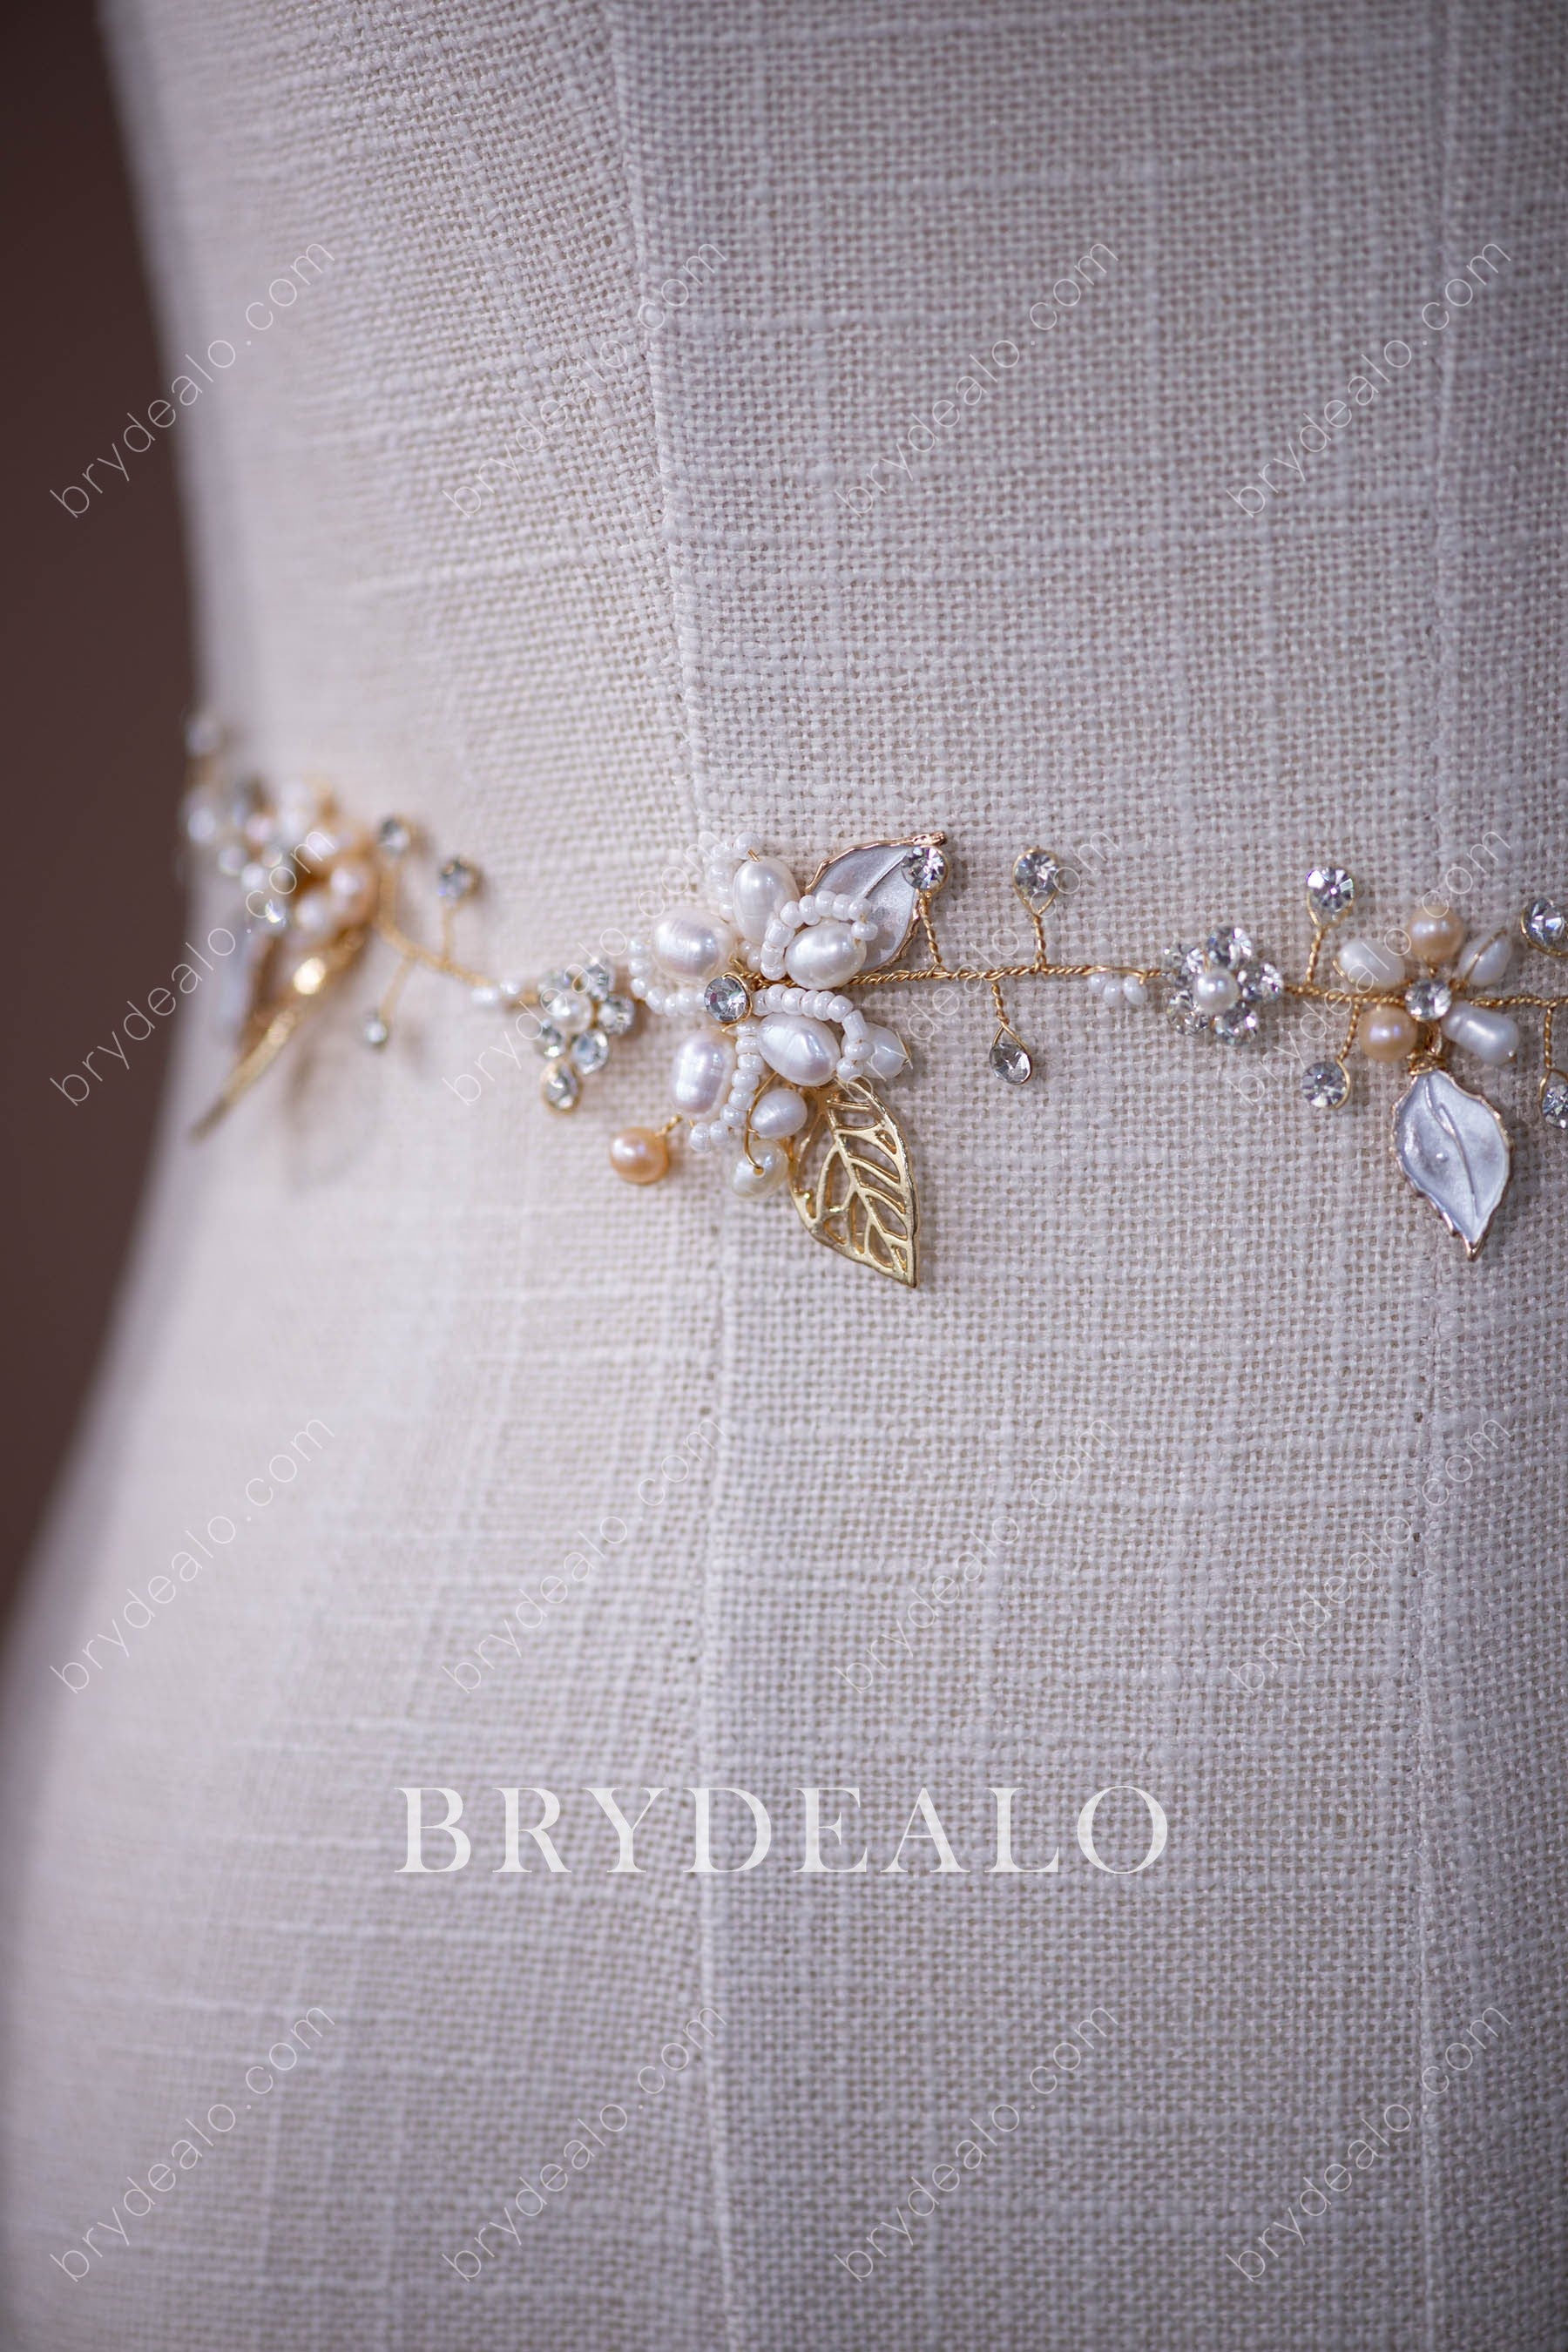 Wholesale Designer Botanically-inspired Wedding Dress Sash